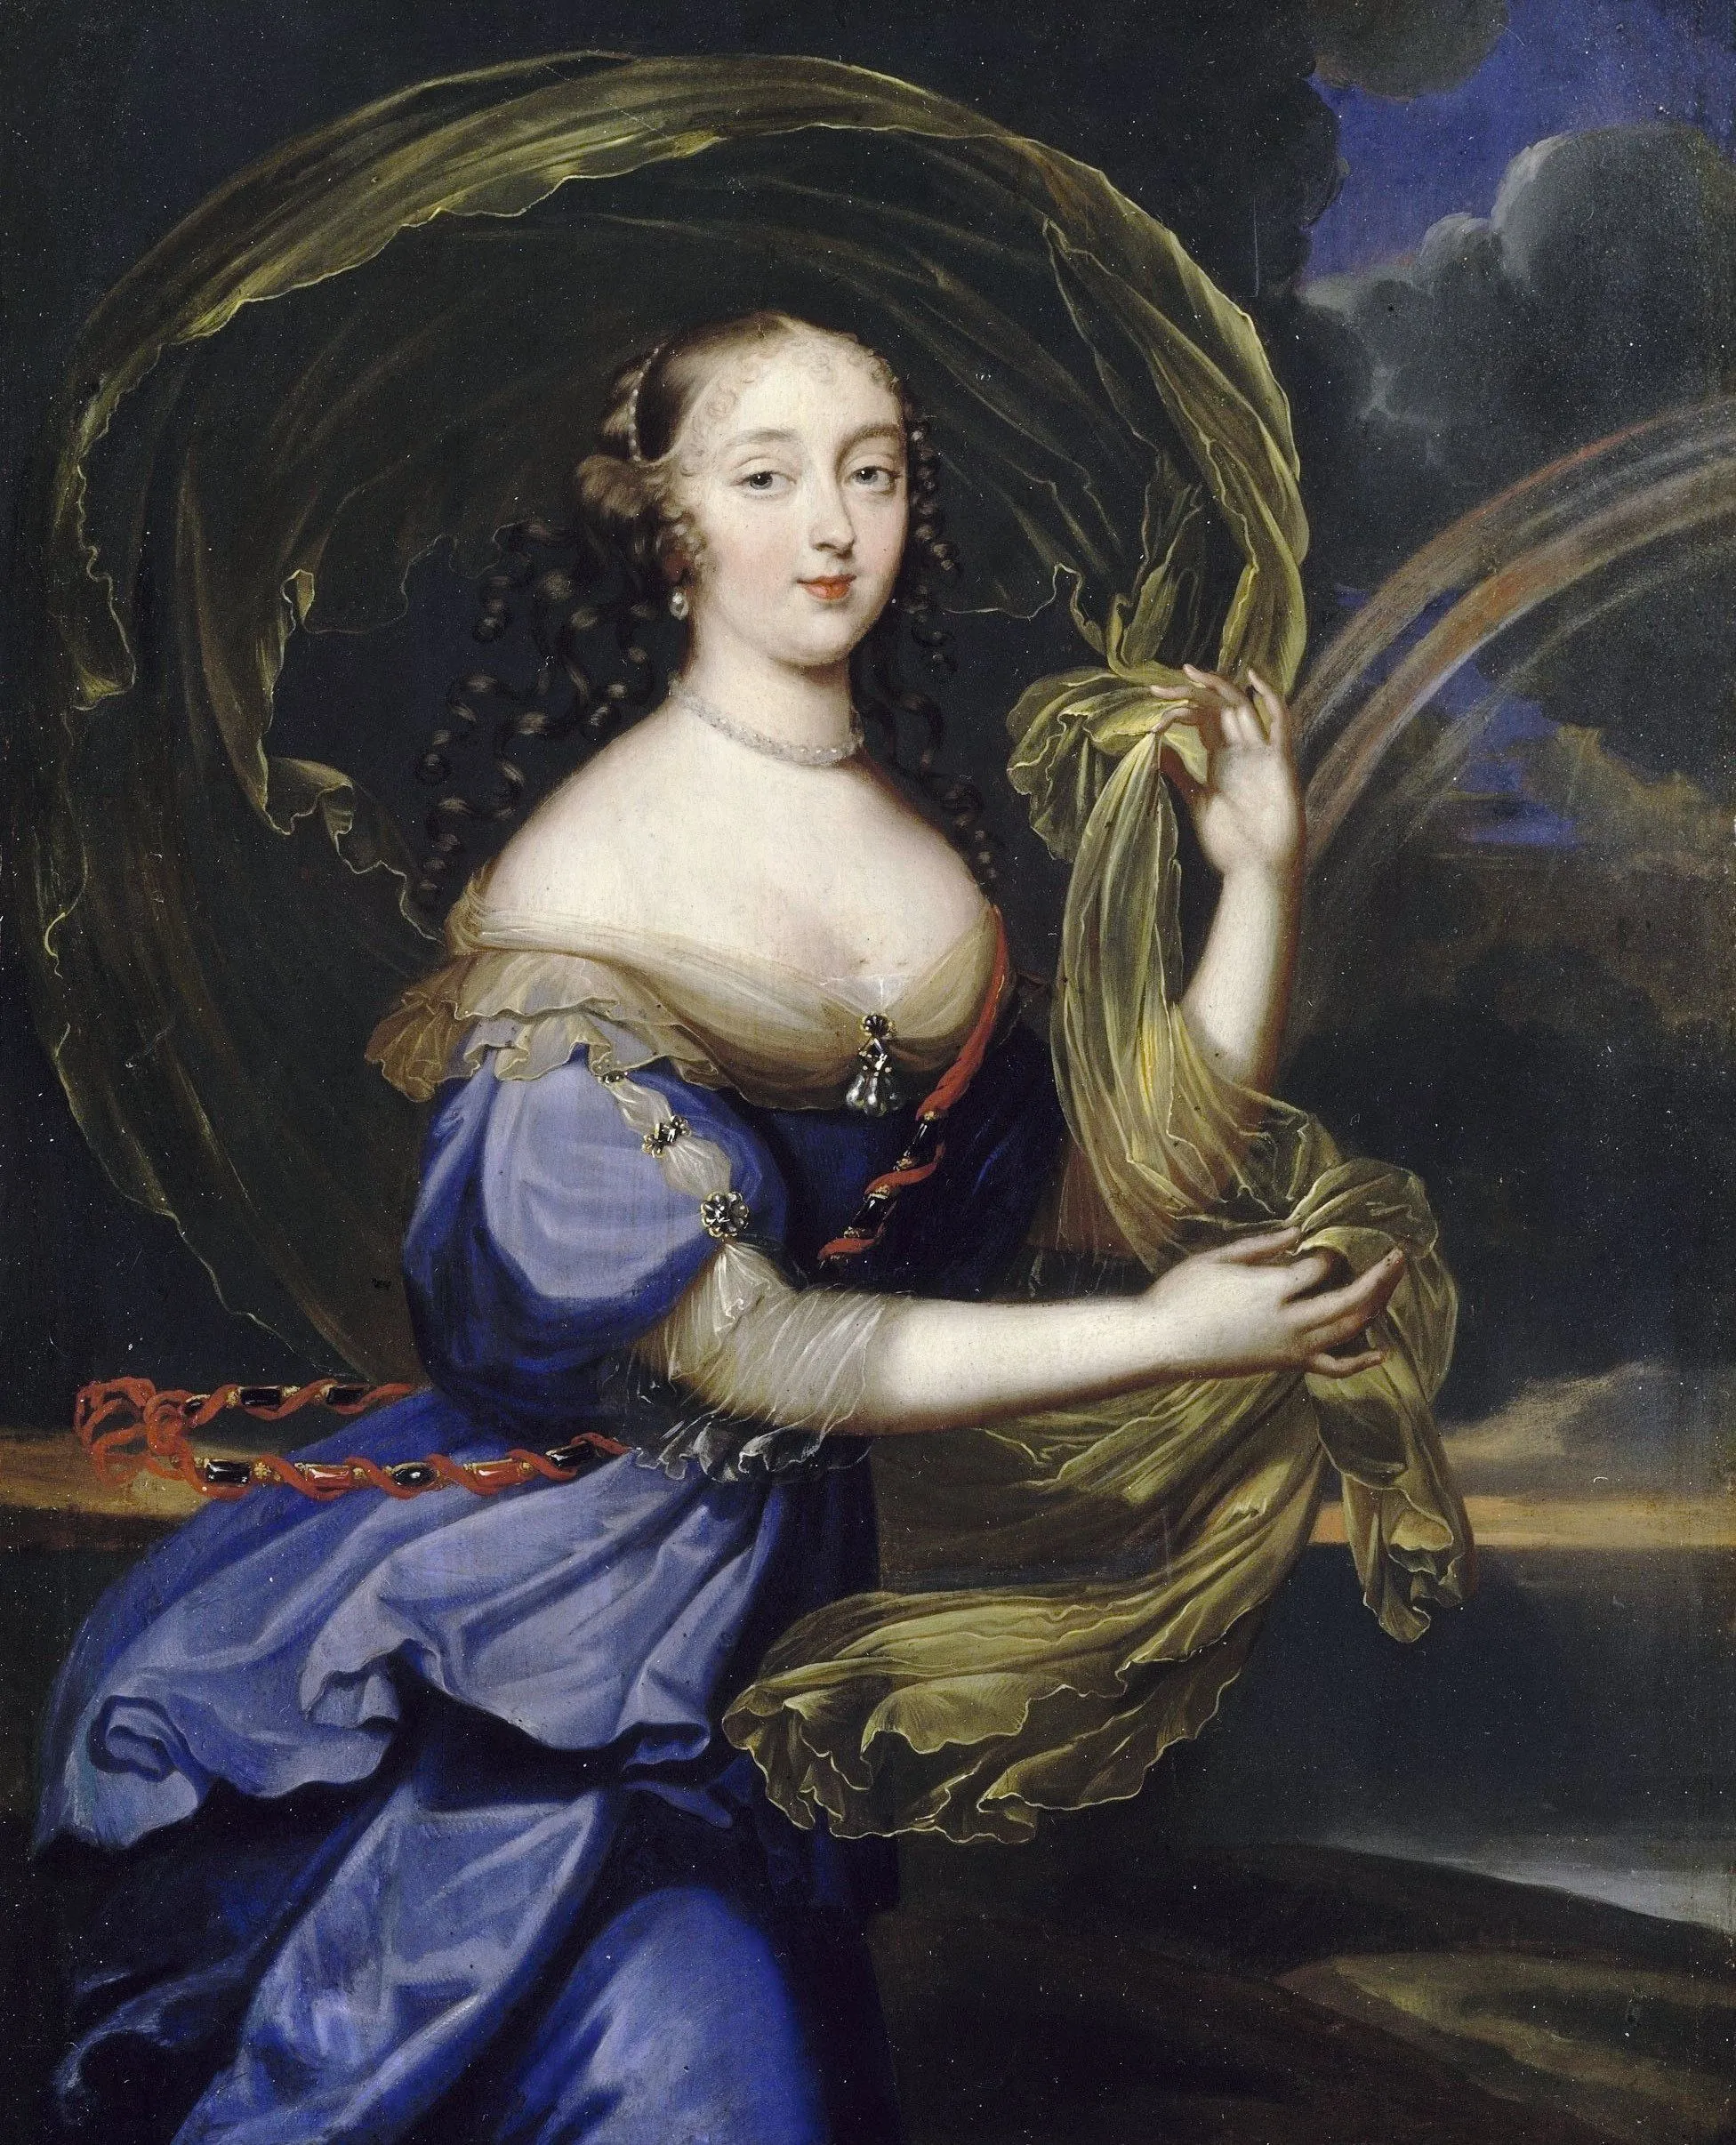 Anonyme, Françoise-Athénaïs de Rochechouart, marquise de Montespan représentée en Iris, 2e moitié du XVIIe siècle, huile sur cuivre, château de Versailles.